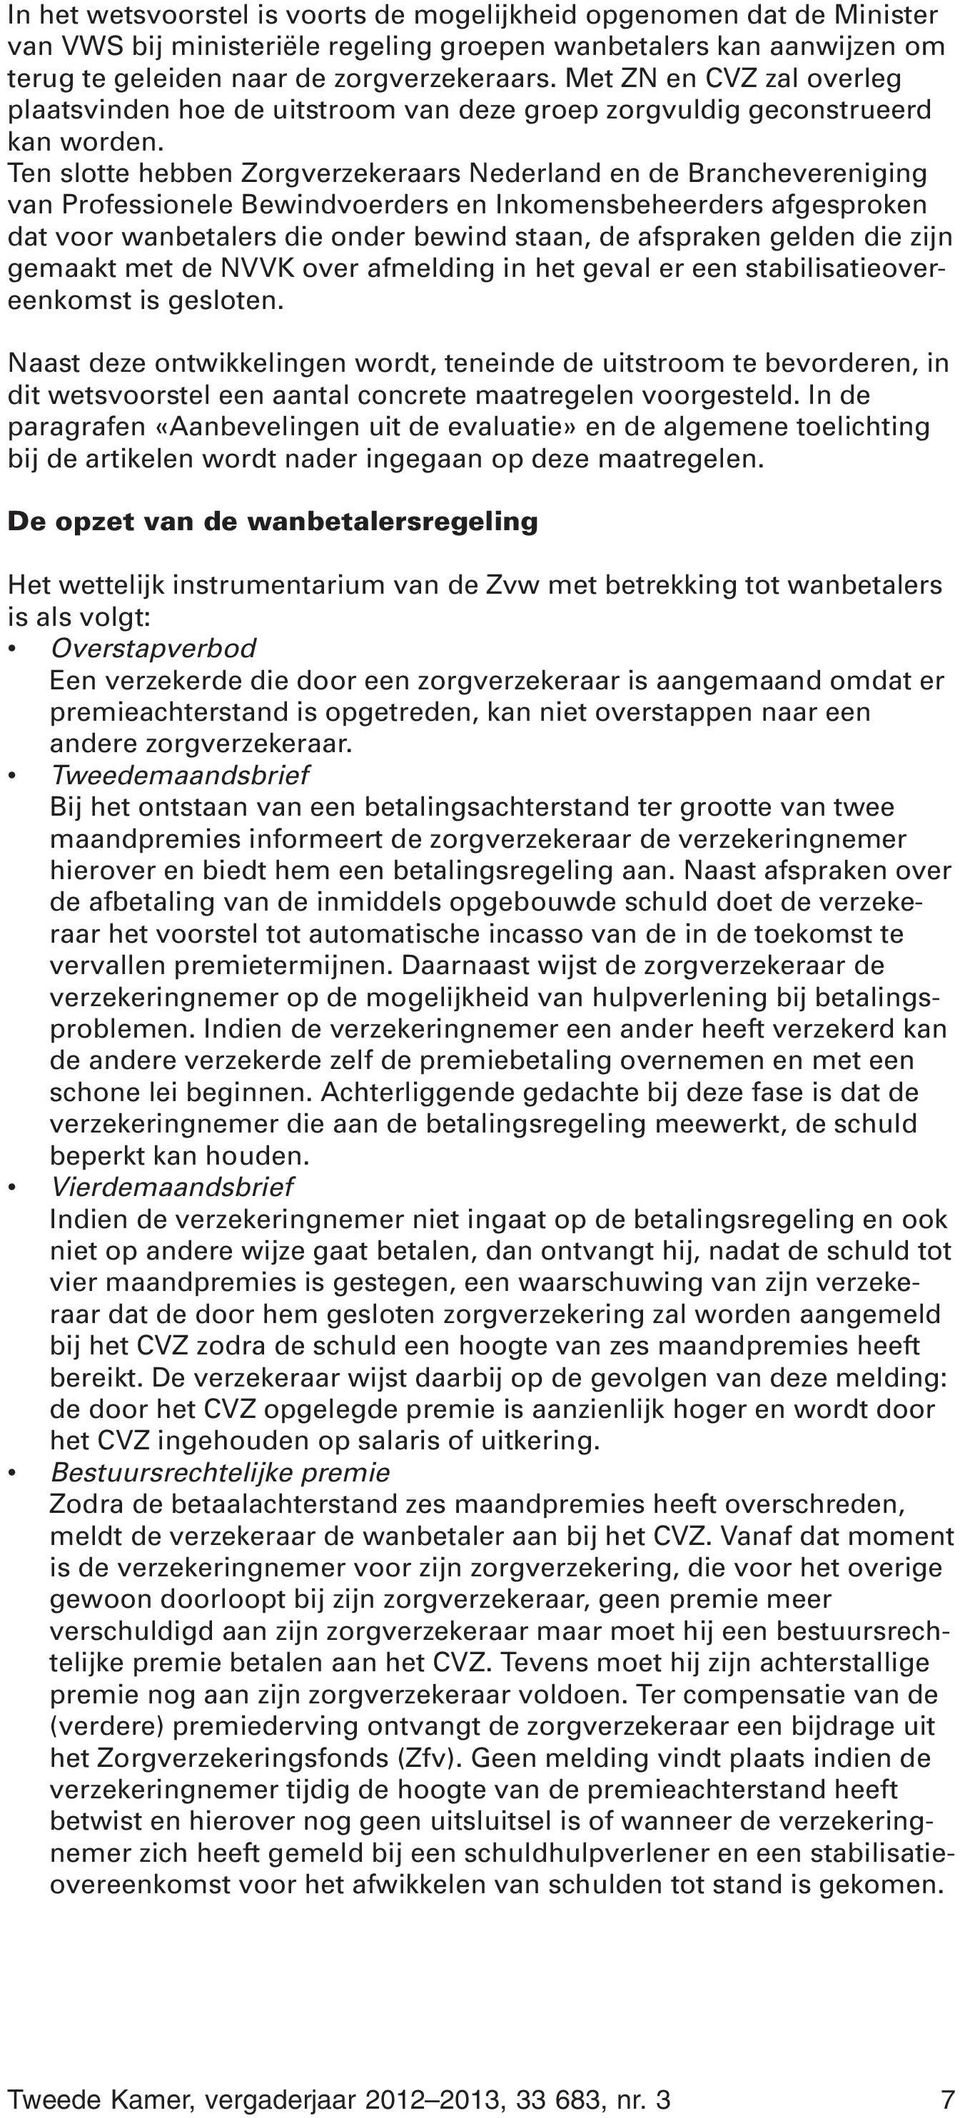 Ten slotte hebben Zorgverzekeraars Nederland en de Branchevereniging van Professionele Bewindvoerders en Inkomensbeheerders afgesproken dat voor wanbetalers die onder bewind staan, de afspraken